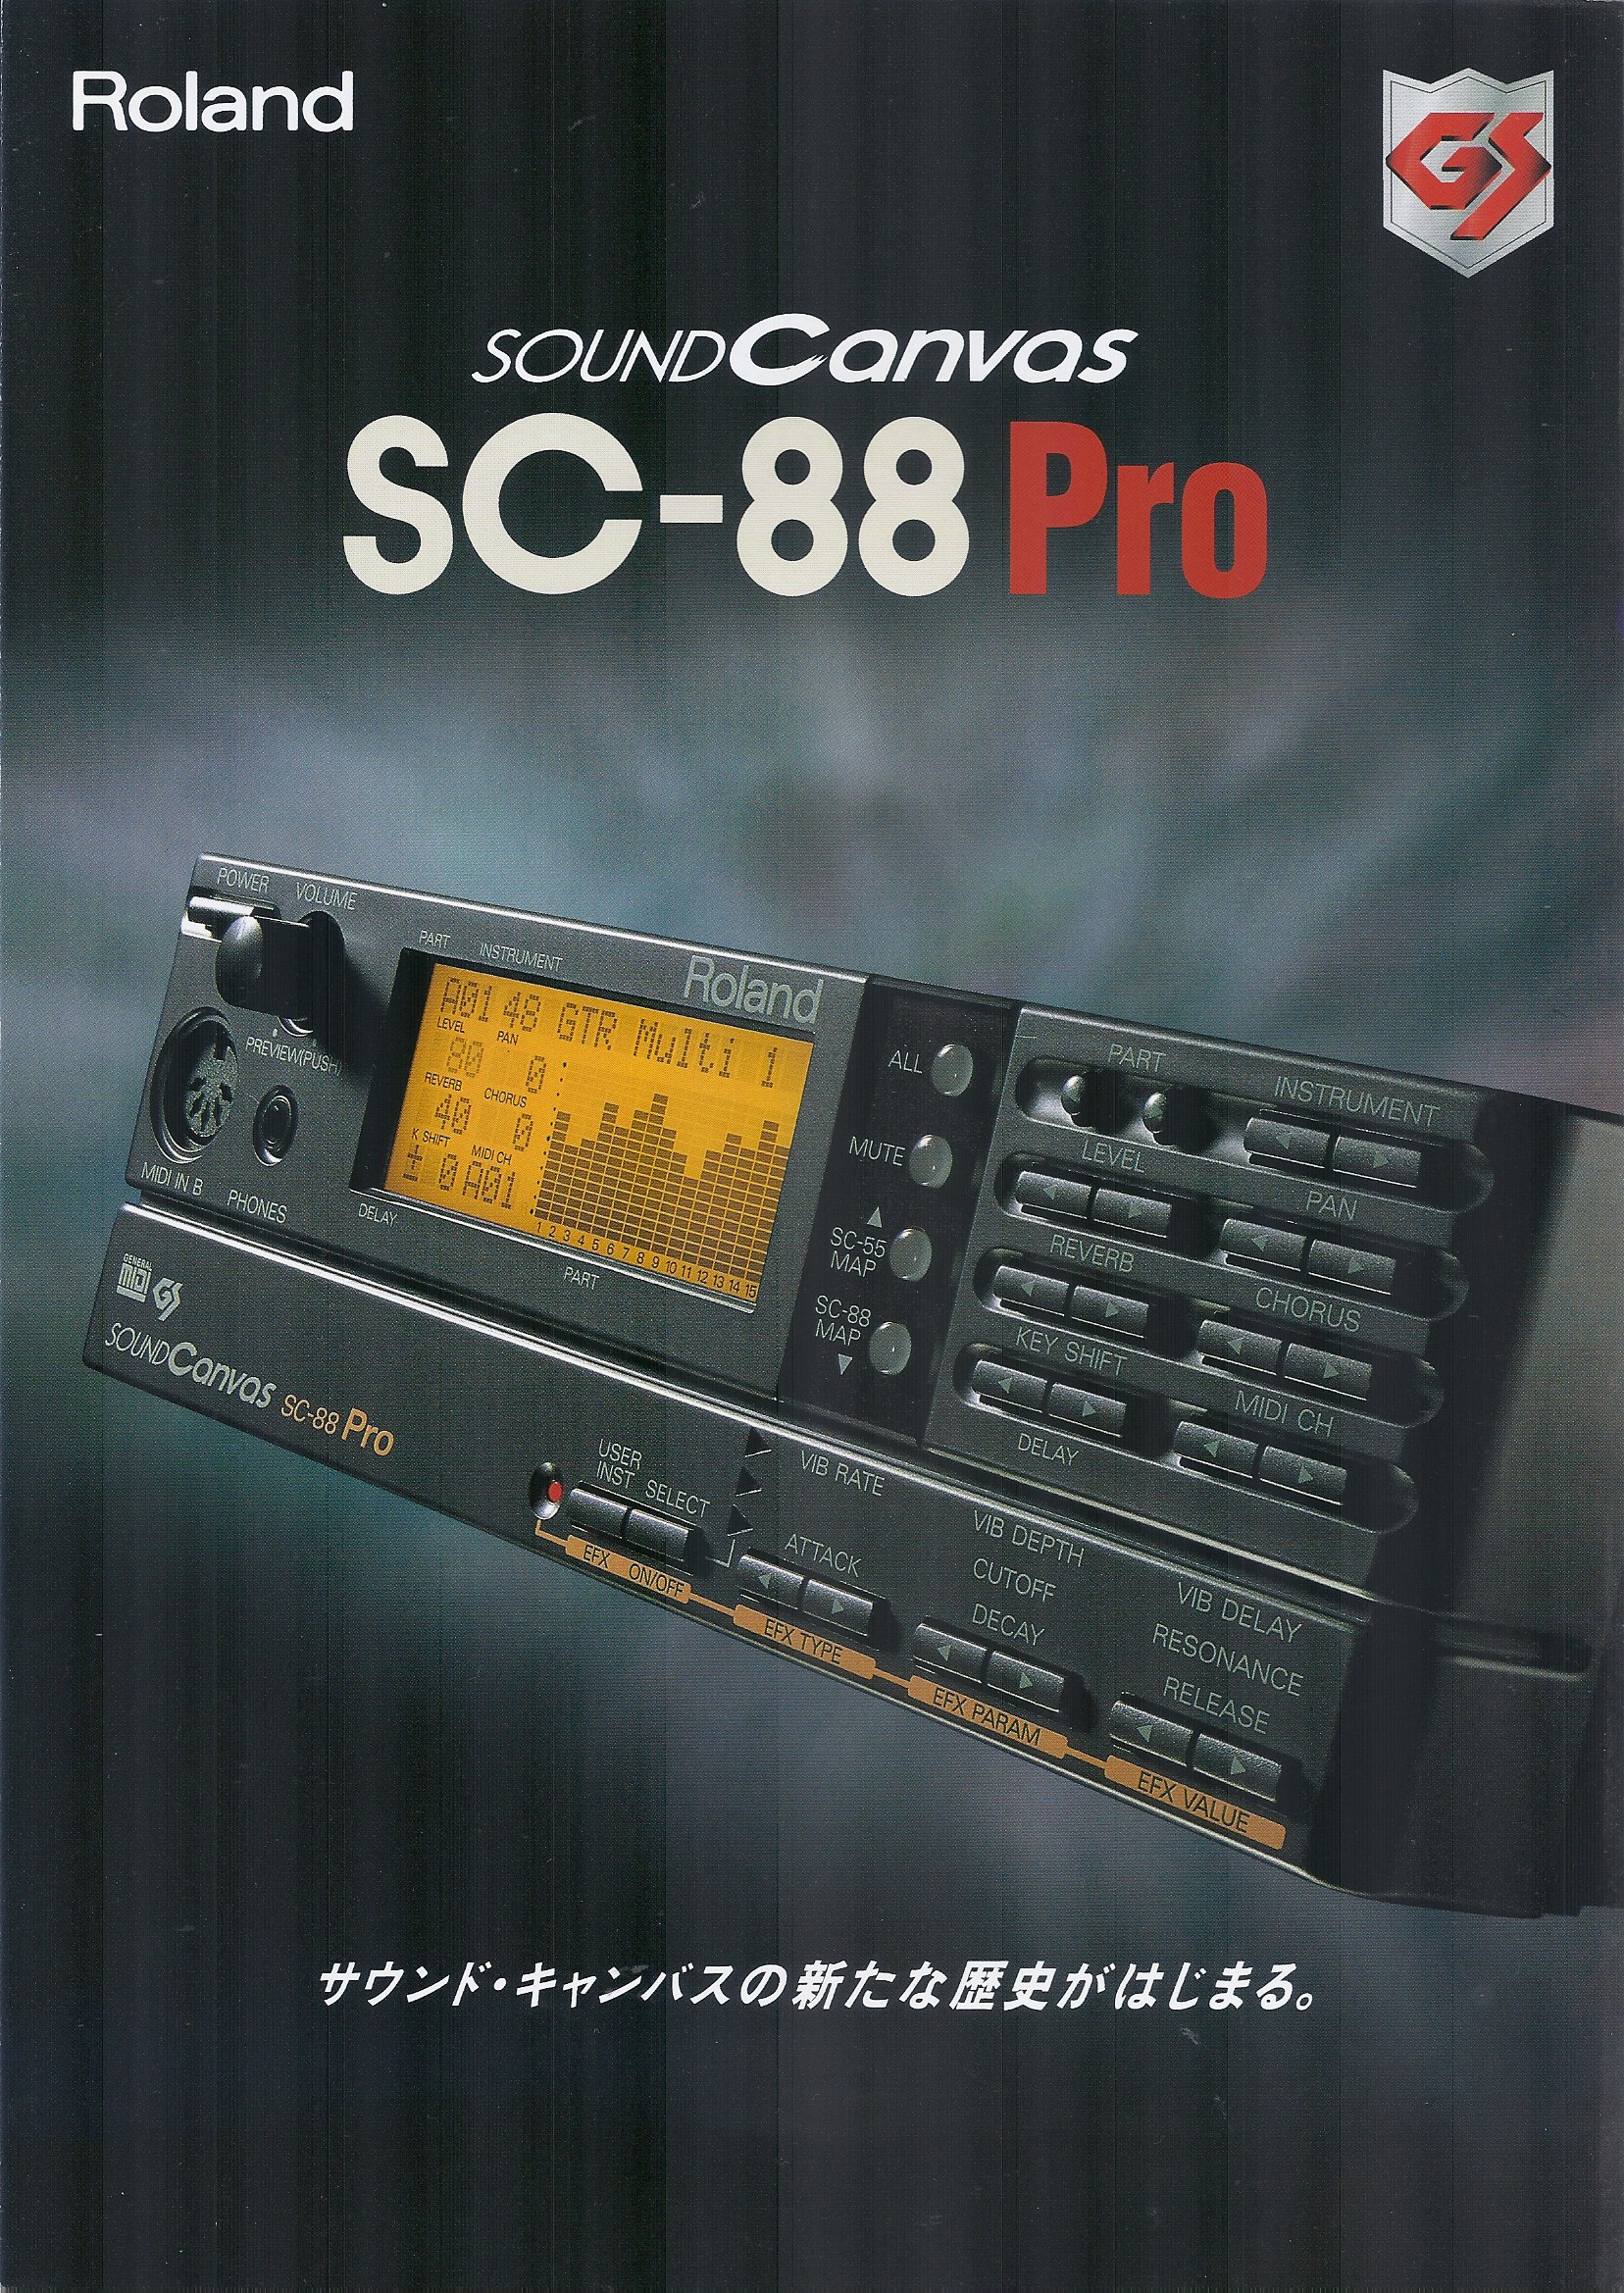 1996年、Roland GS音源の最高峰として登場したSC-88Pro | 藤本健の “DTMステーション”